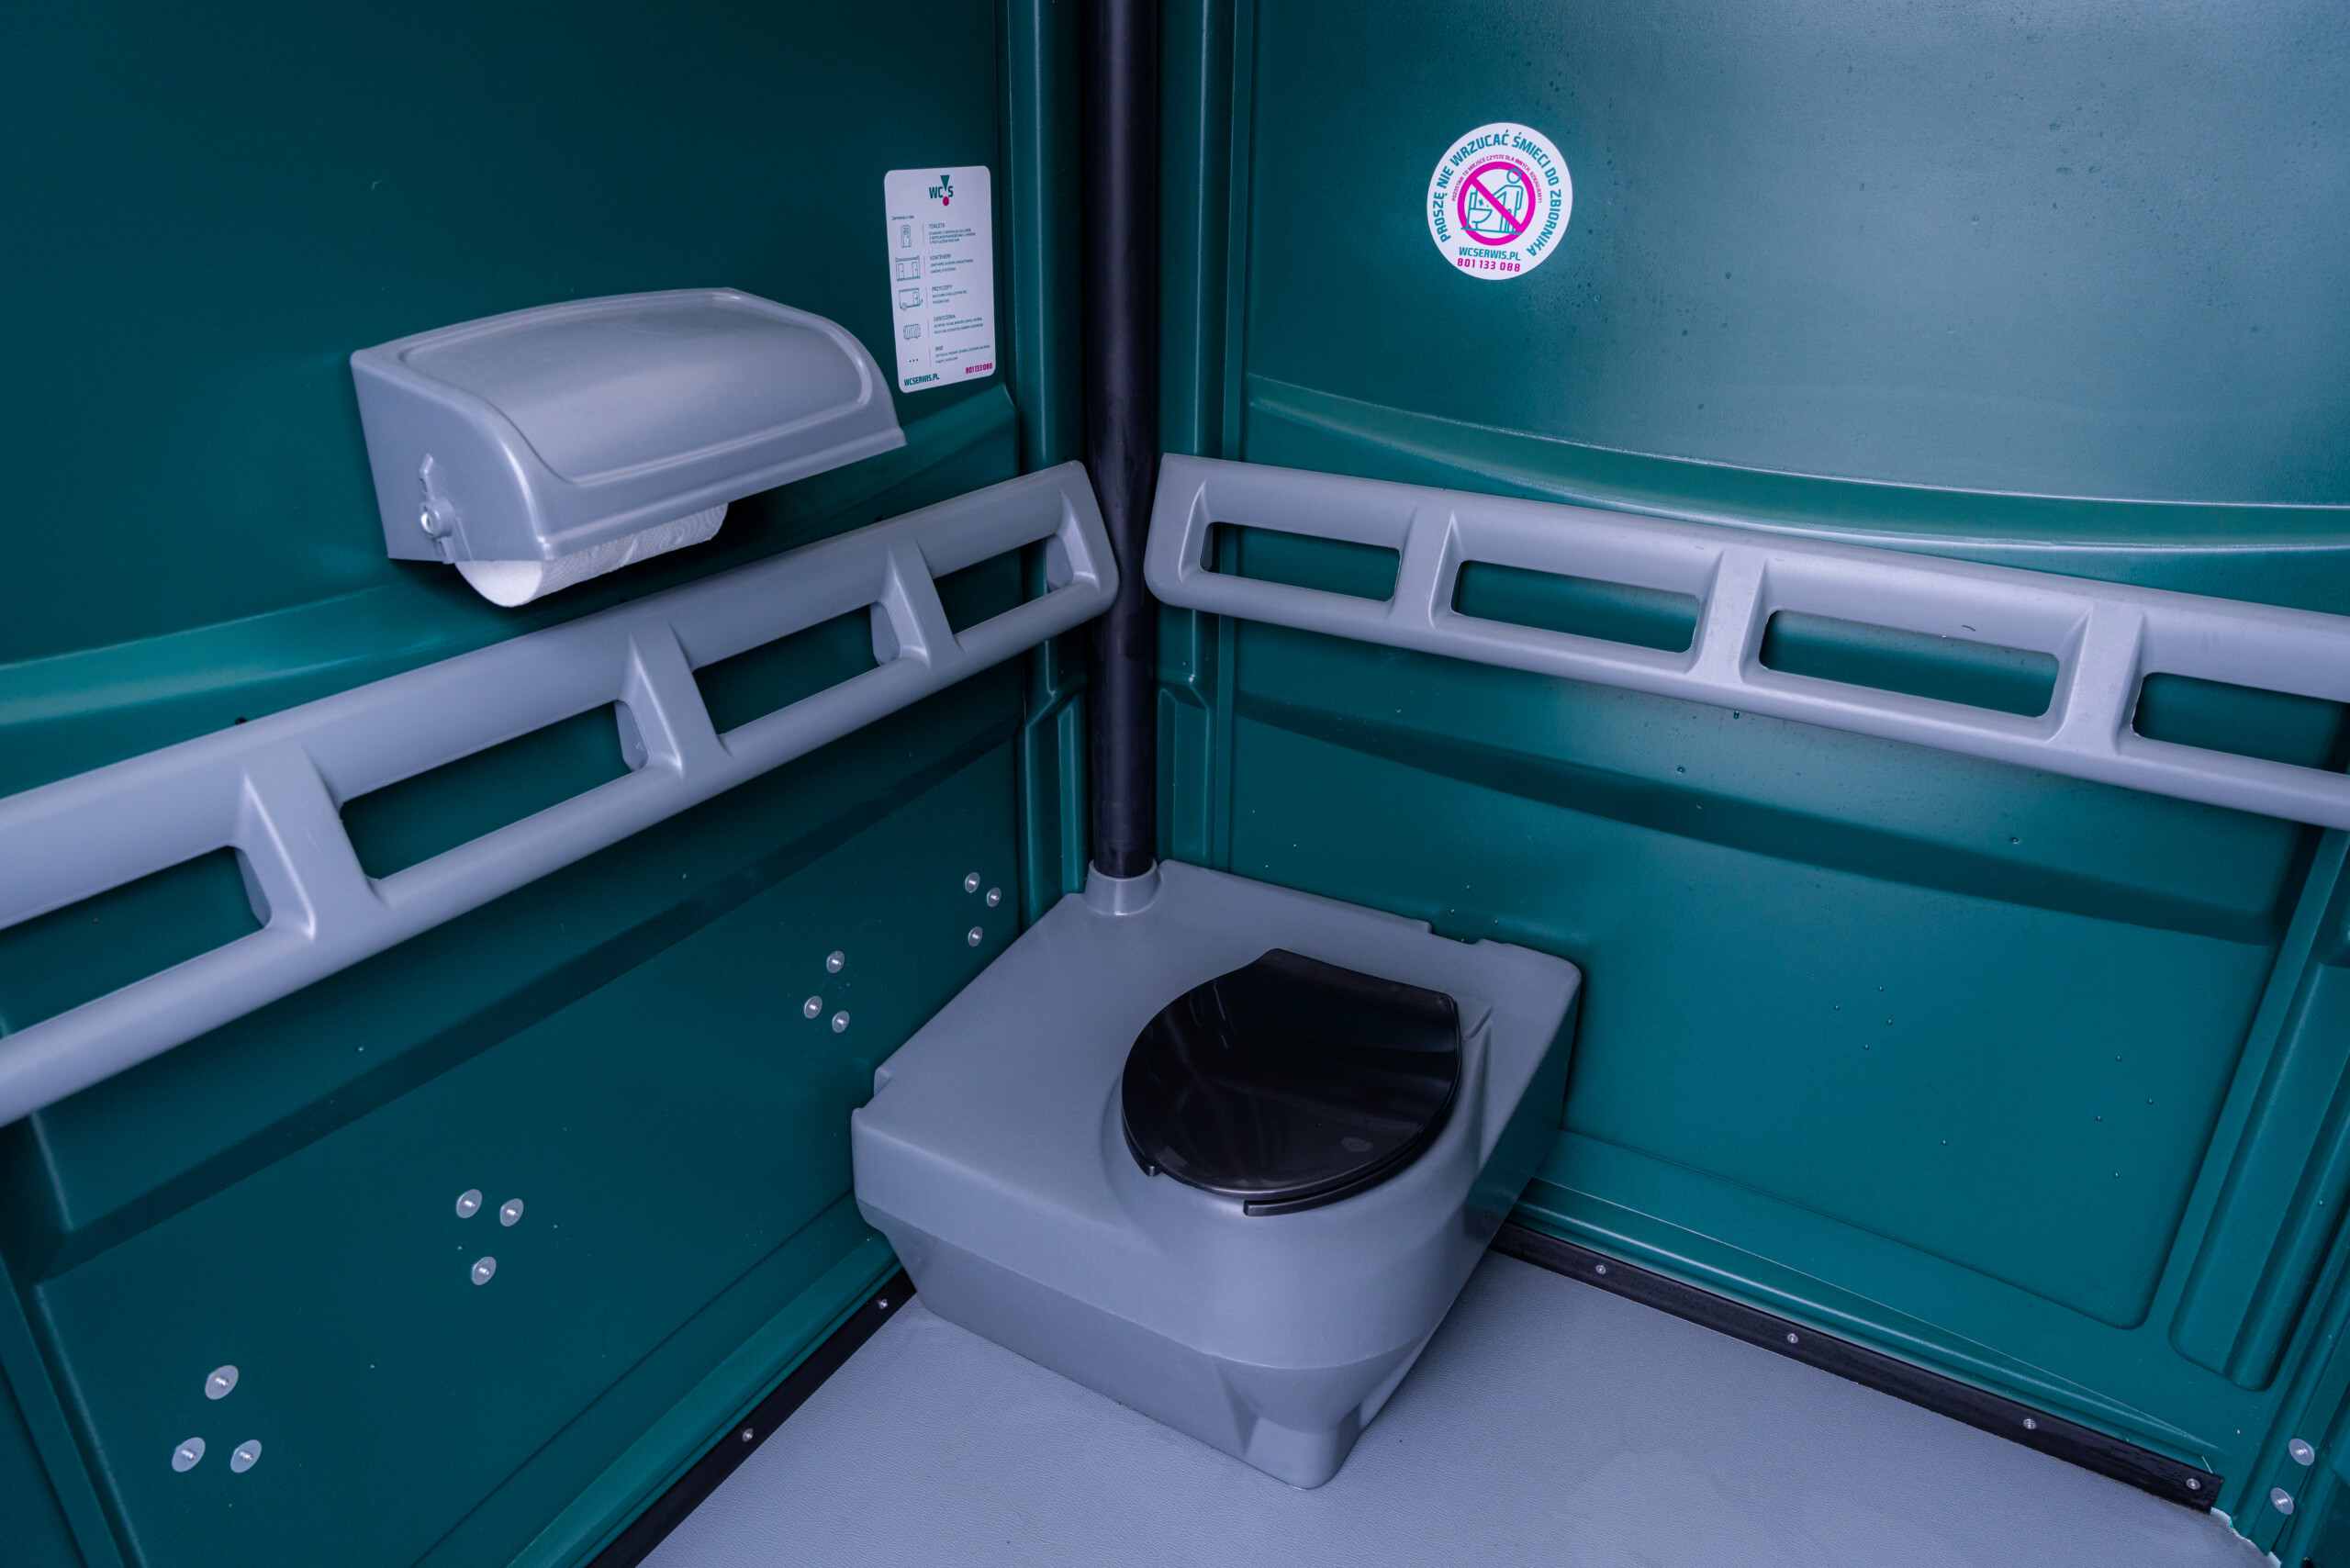 Toalety przenośne dla osób niepełnosprawnych – dostępność na pierwszym miejscu